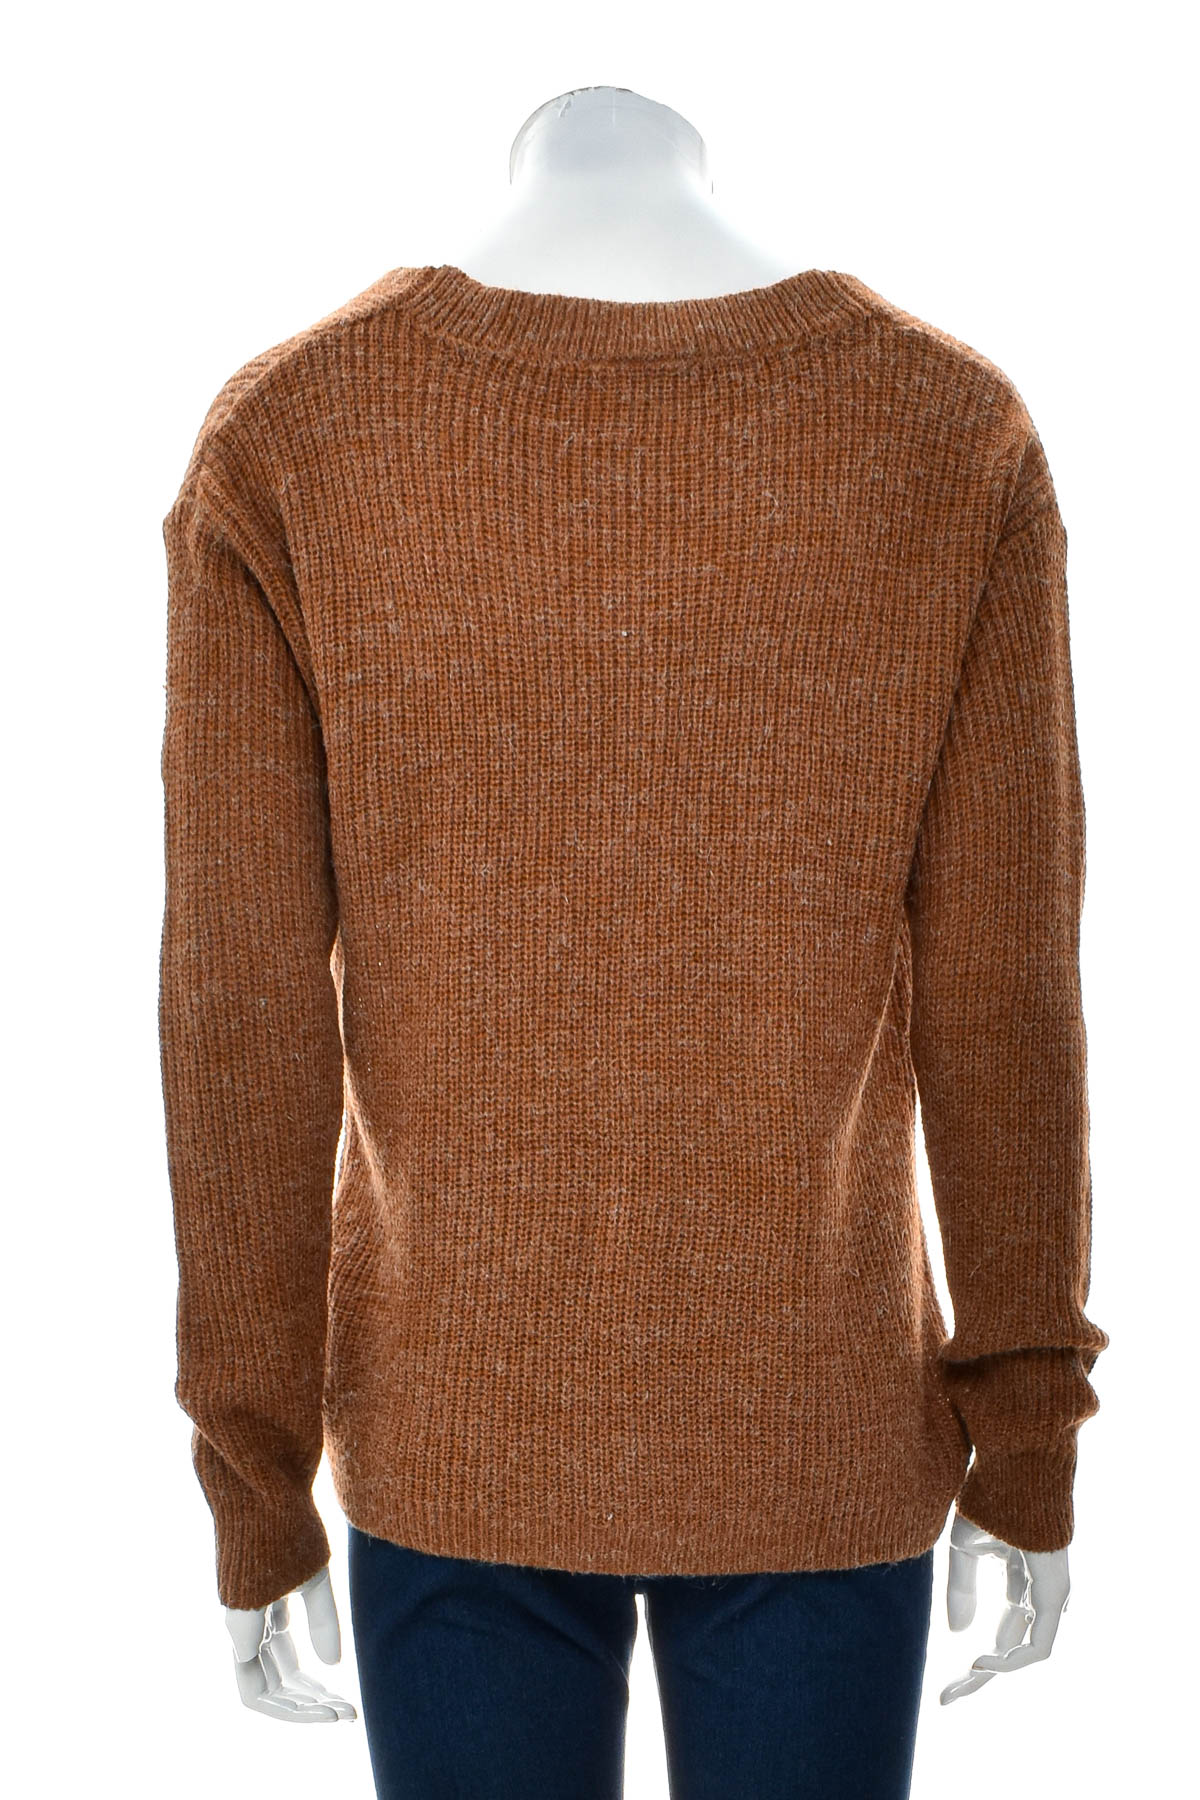 Women's sweater - ICHI - 1